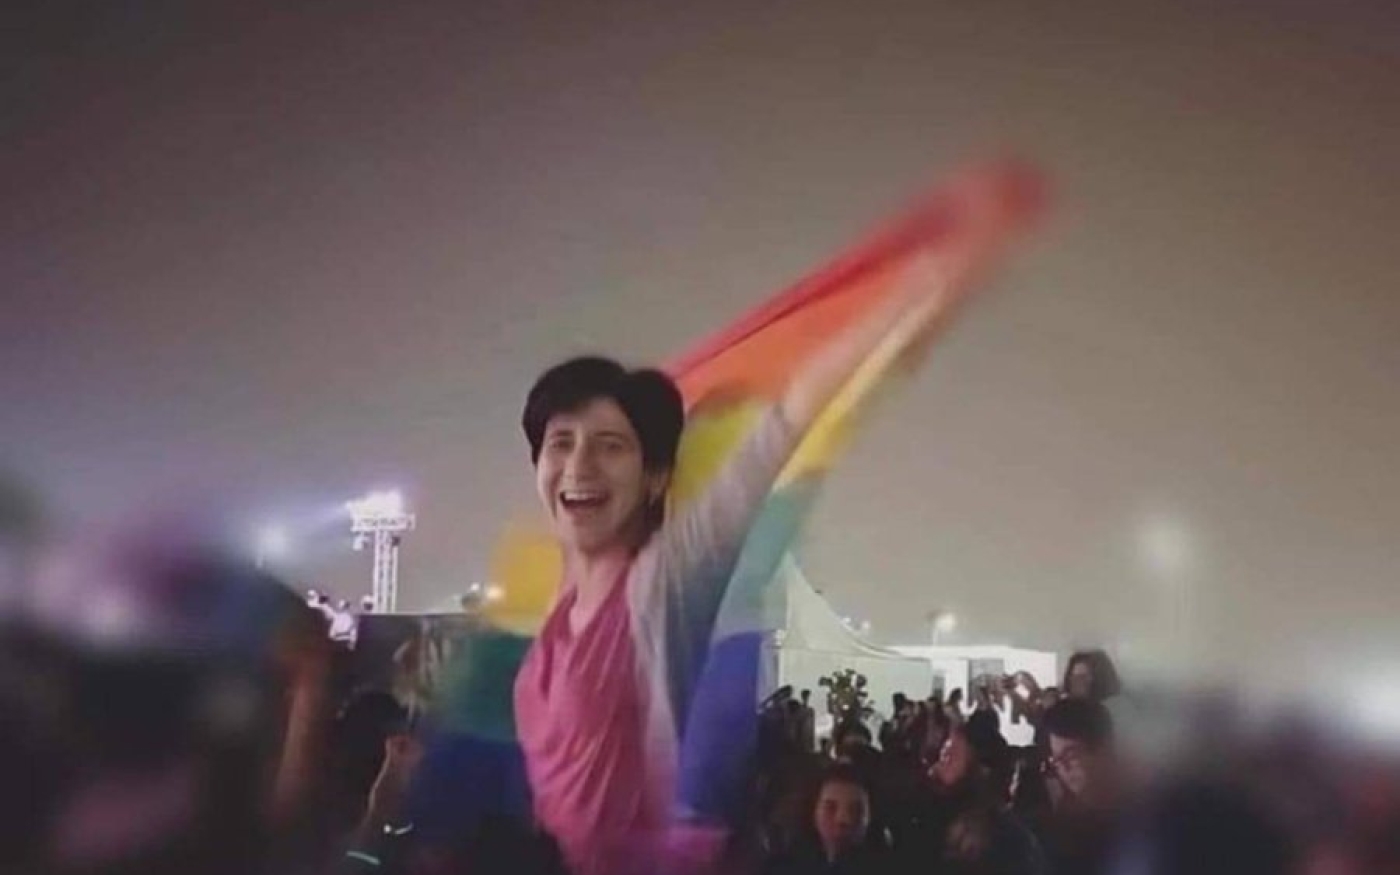 La présence du drapeau arc-en-ciel, devenu un symbole LGBTQI+, au Cairo Festival City en 2017 a entraîné une vague de répression ciblant des individus identifiés comme homosexuels (Twitter/Amr Magdi)